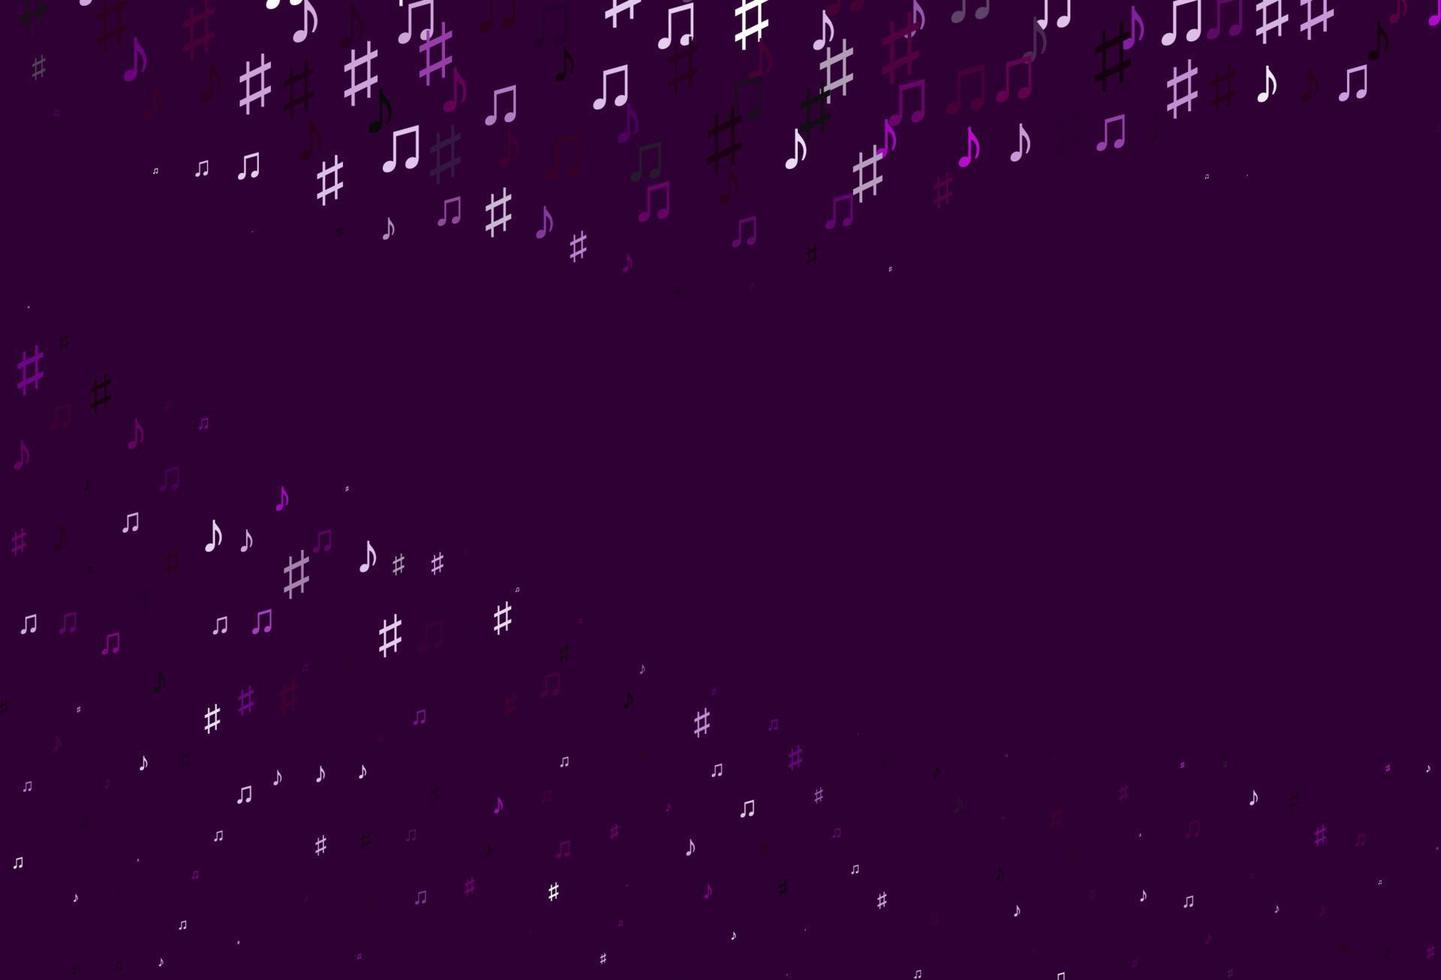 sfondo vettoriale viola chiaro con note musicali.